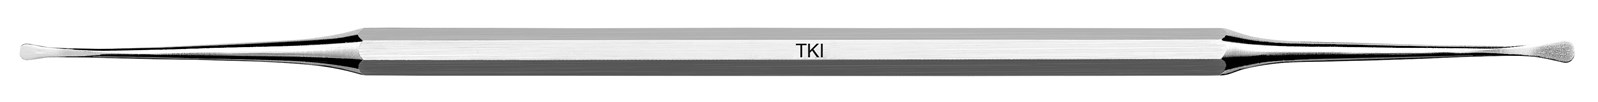 Nůž pro tunelovou techniku - TKI, ADEP tmavě zelený